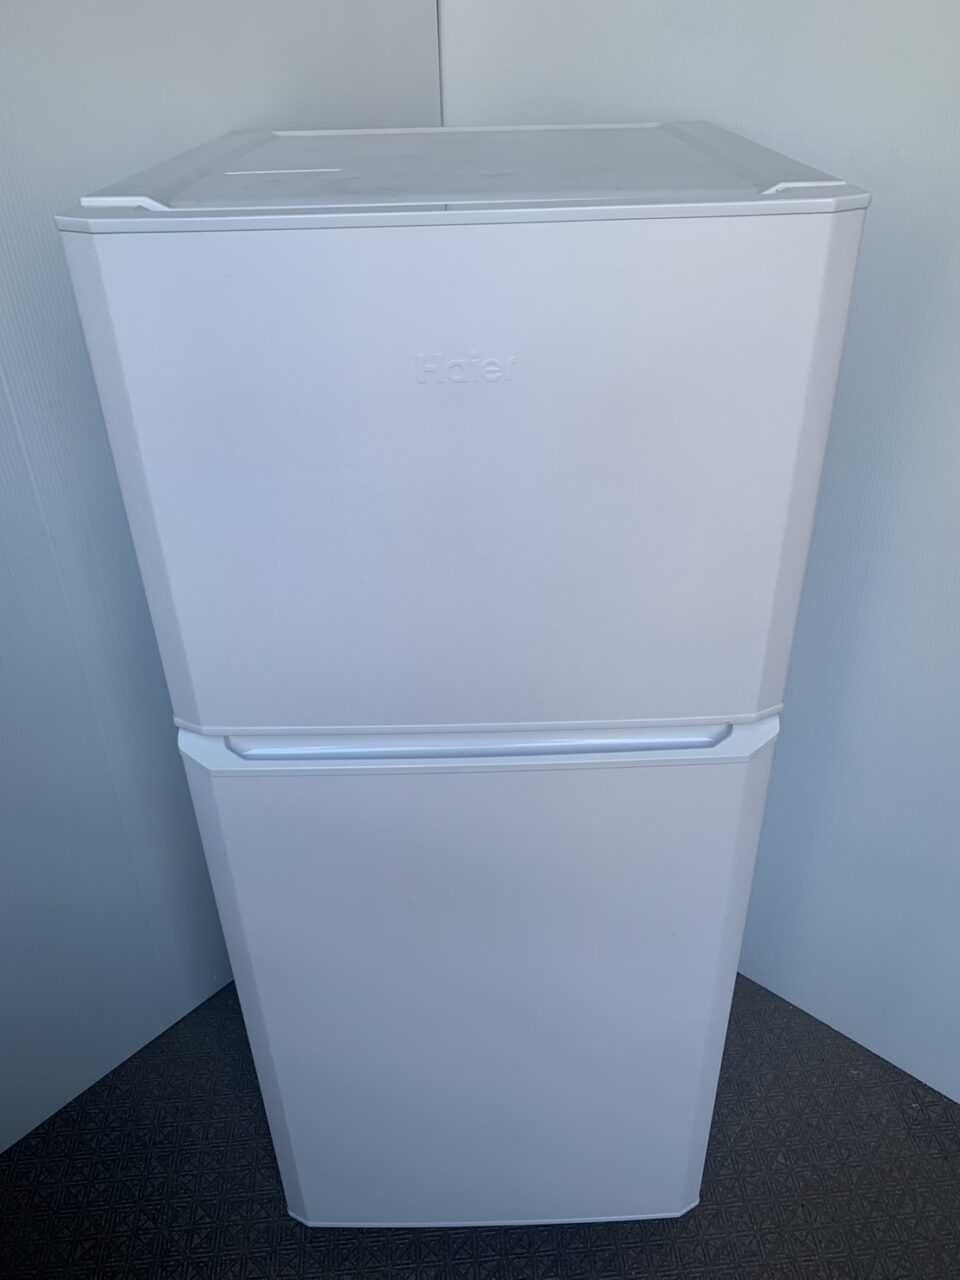 家庭用冷凍冷蔵庫 2018年 - 冷蔵庫・冷凍庫